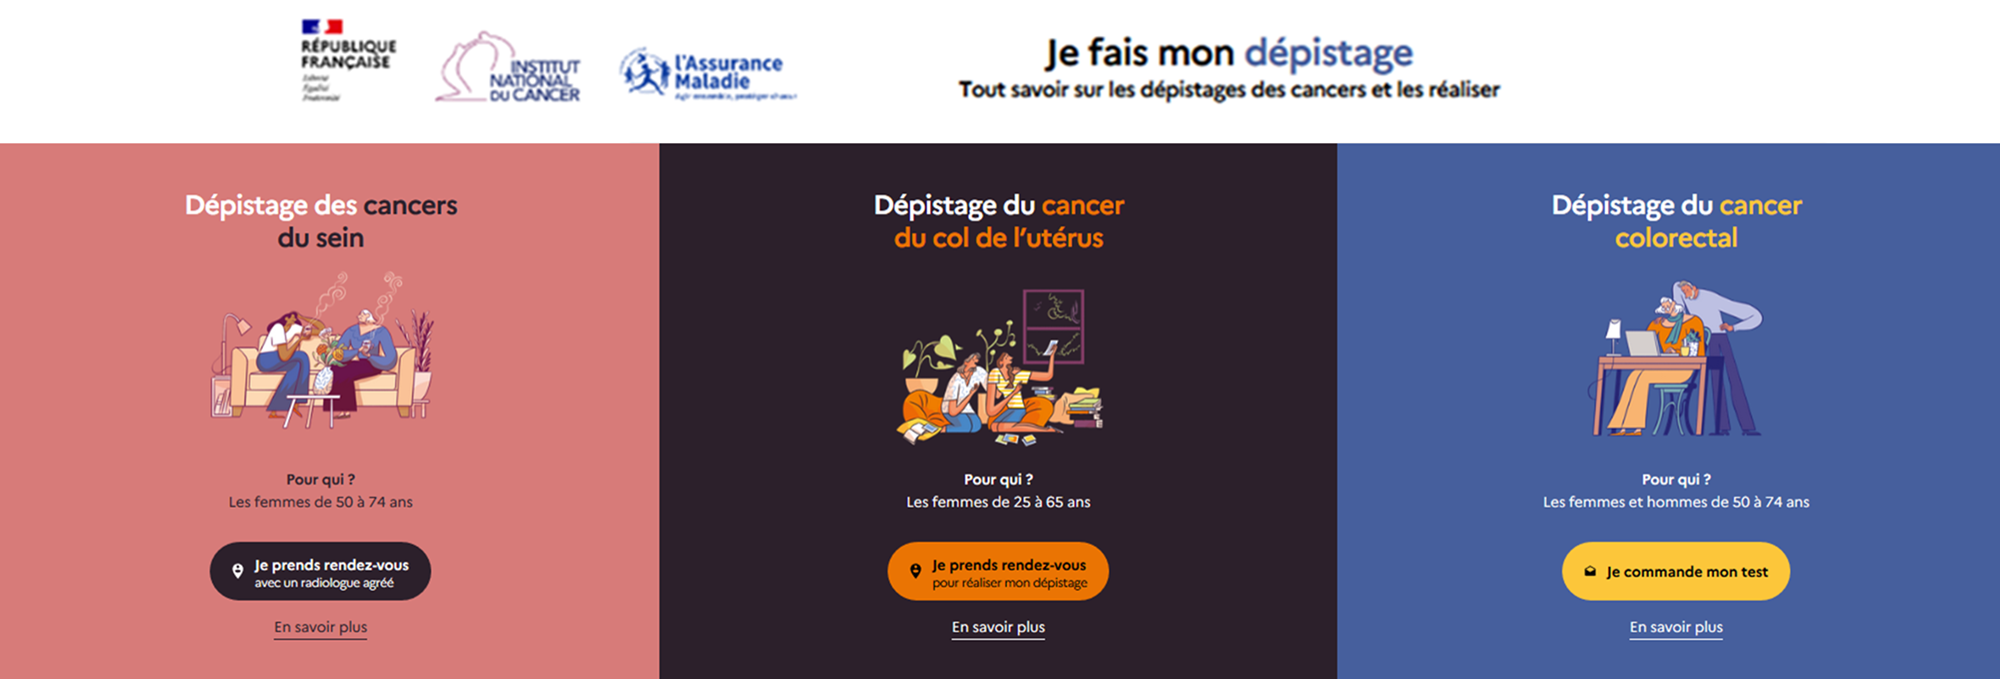 Site internet : Jefaismondépistagedescancers.e-cancer.fr.